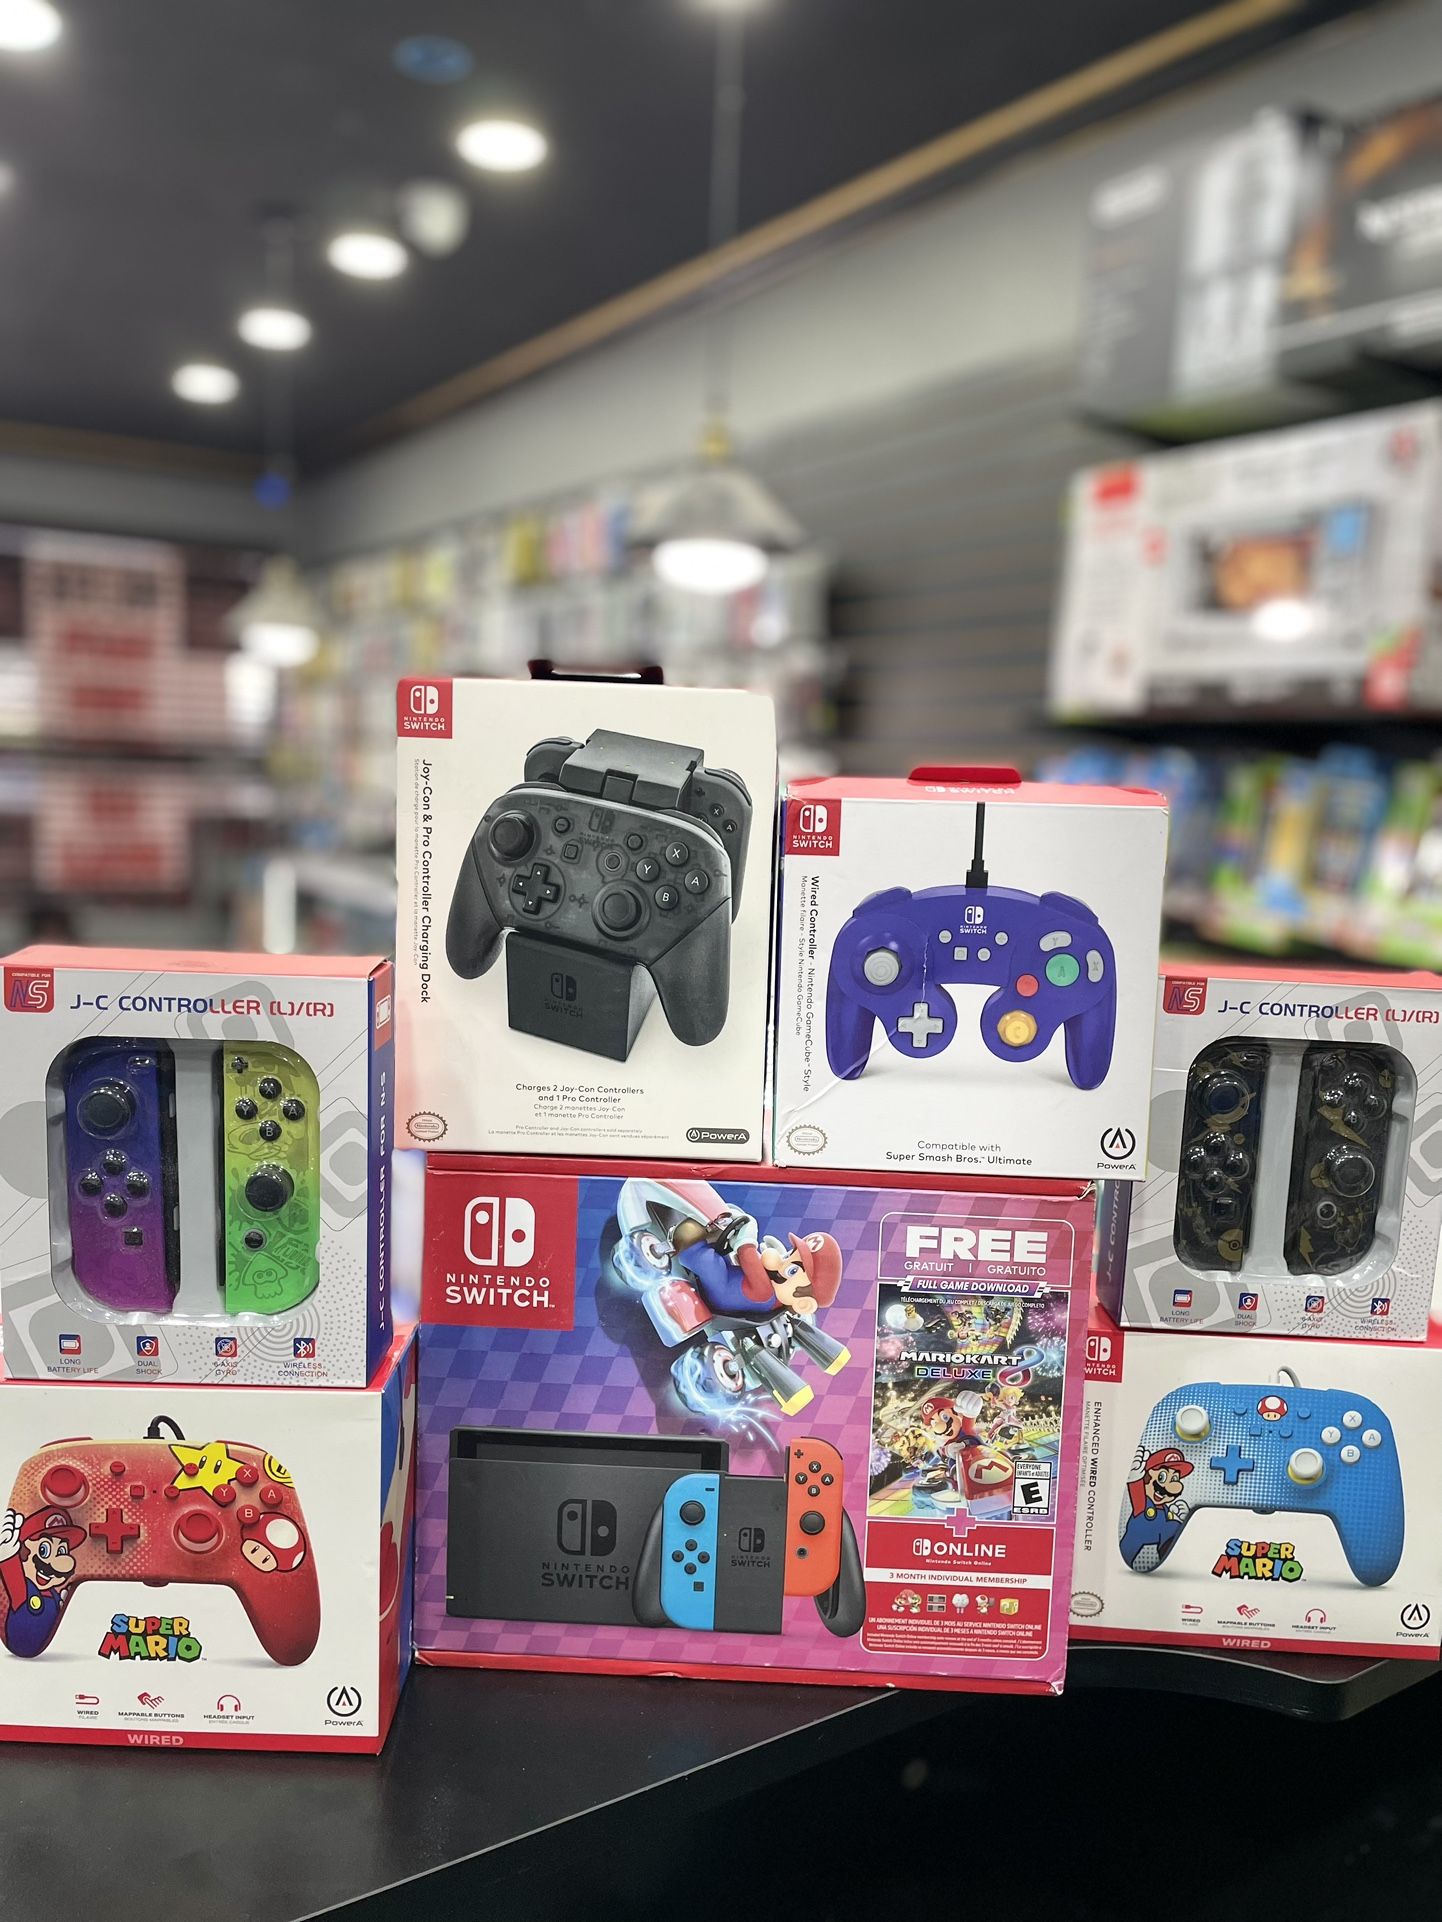 Nintendo Switch OLED (New)